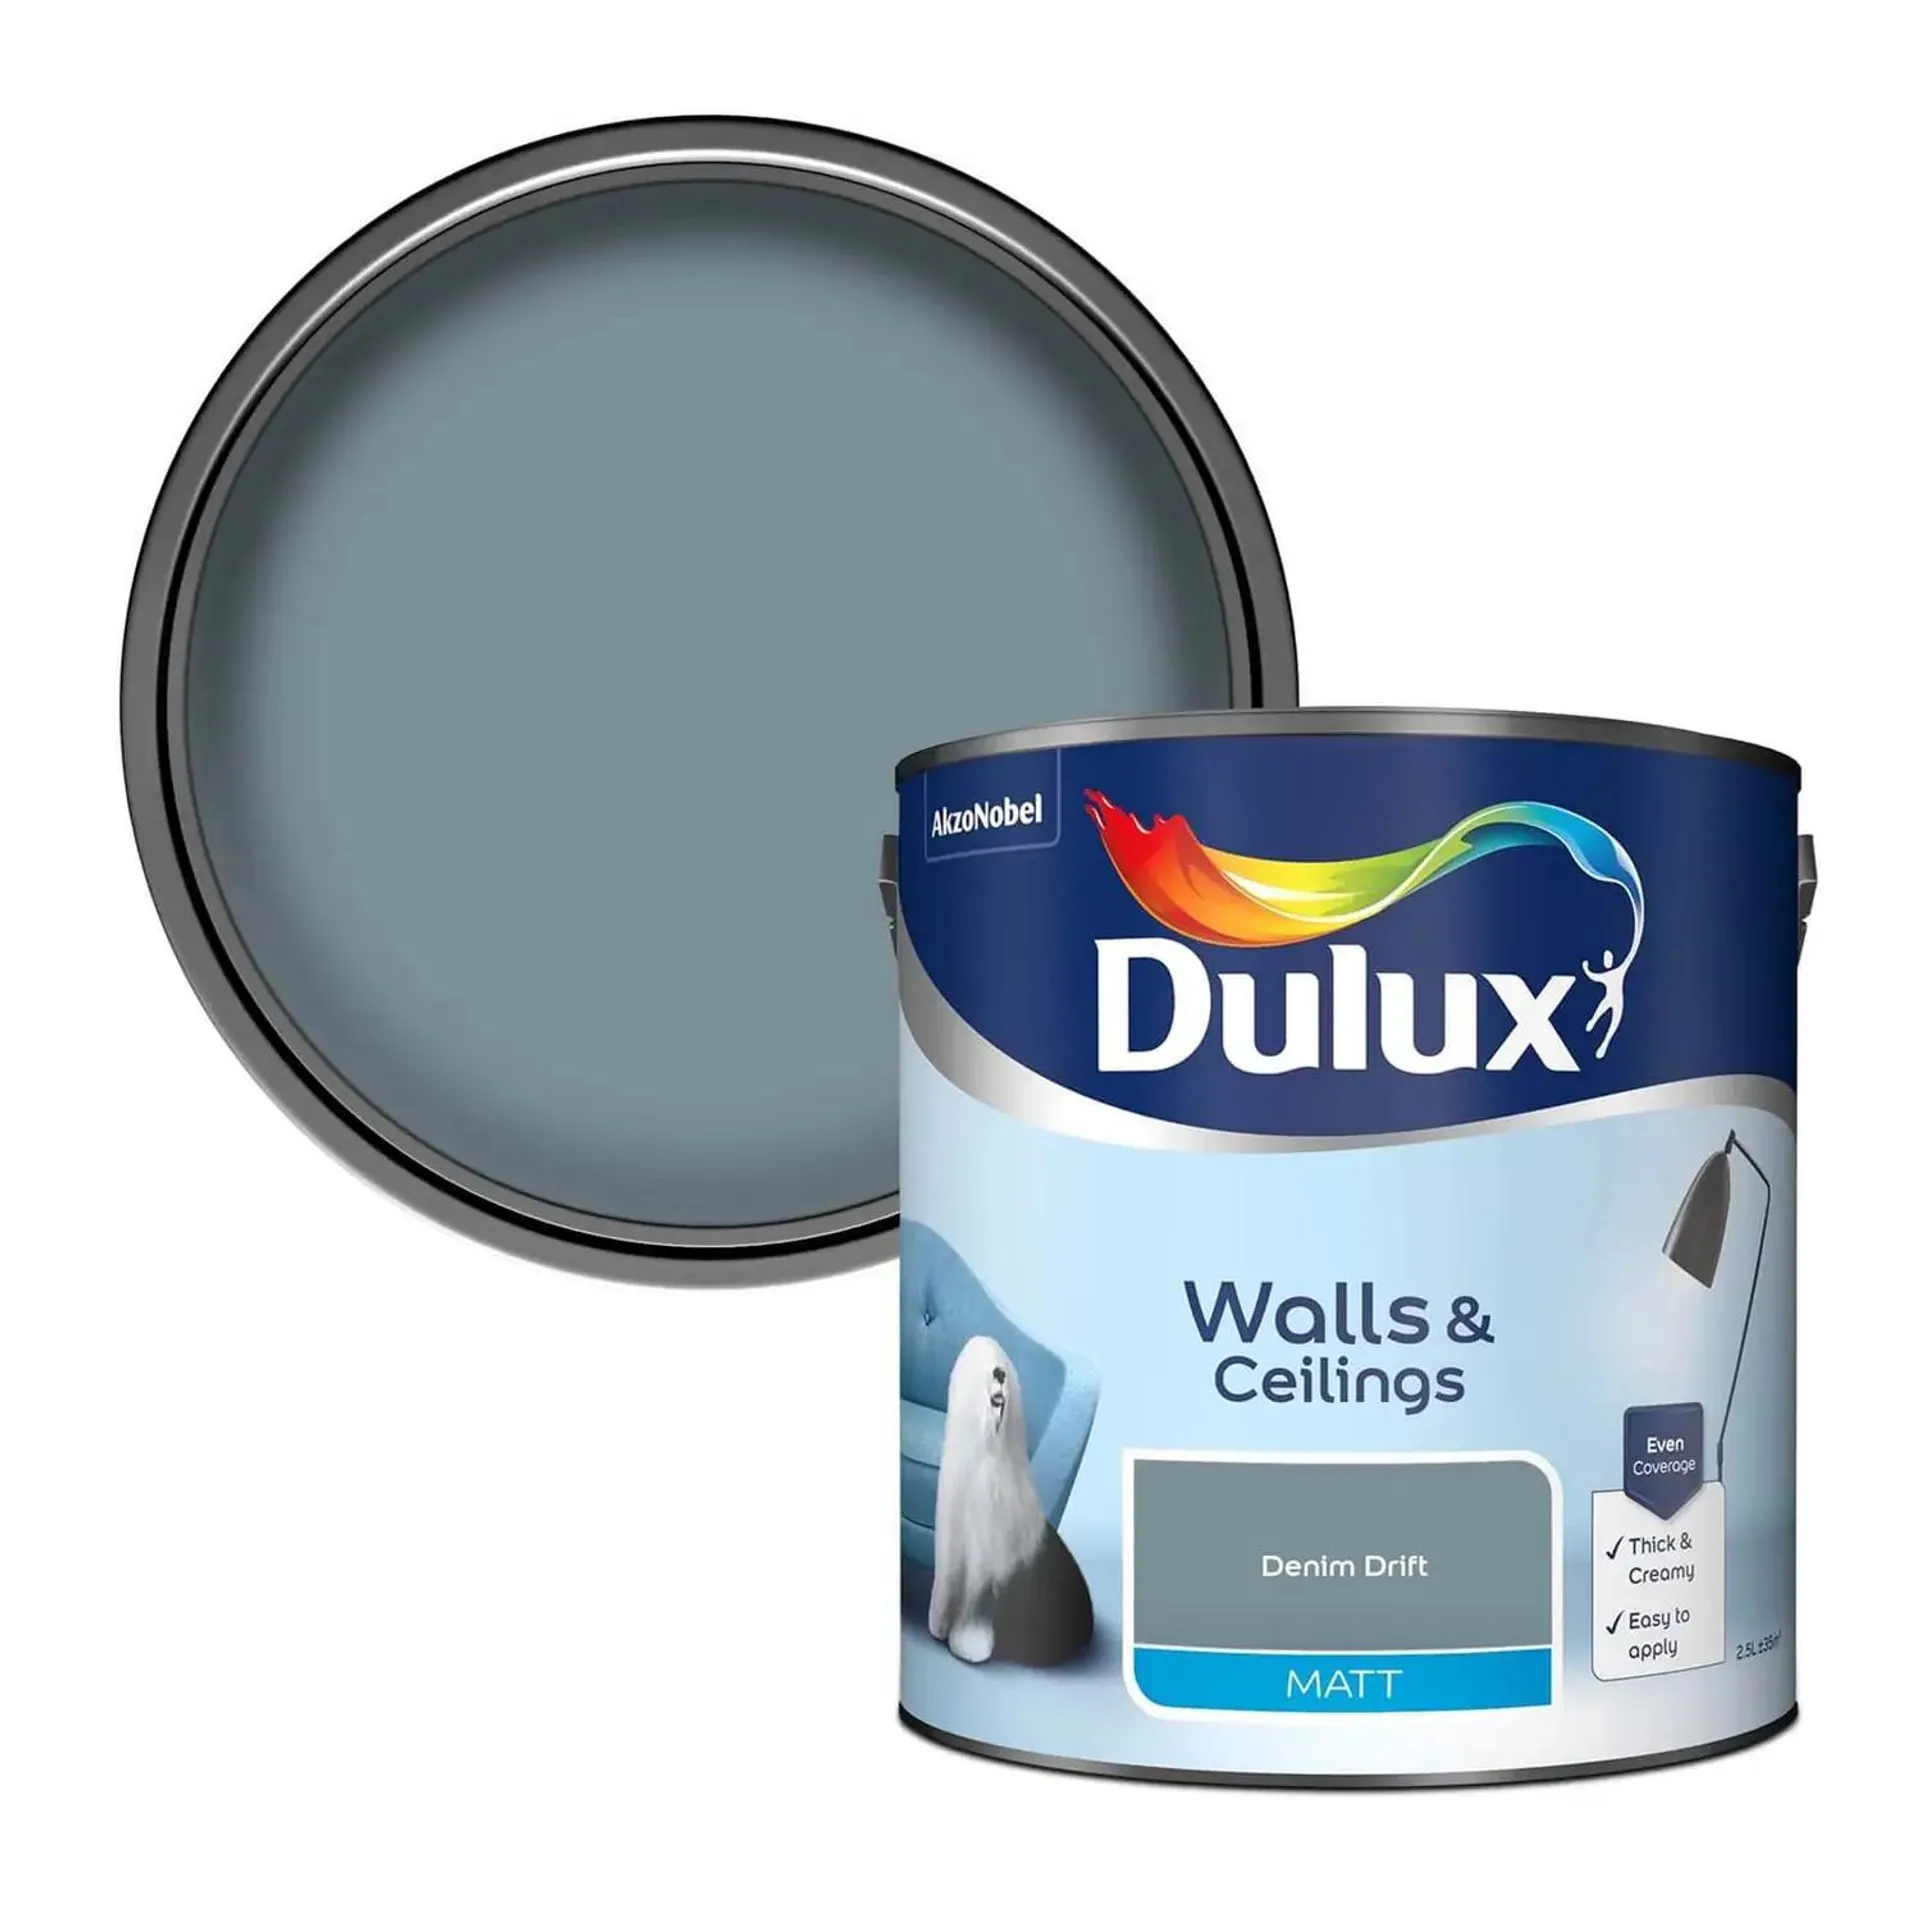 Dulux Standard Denim Drift Matt Emulsion Paint - 2.5L